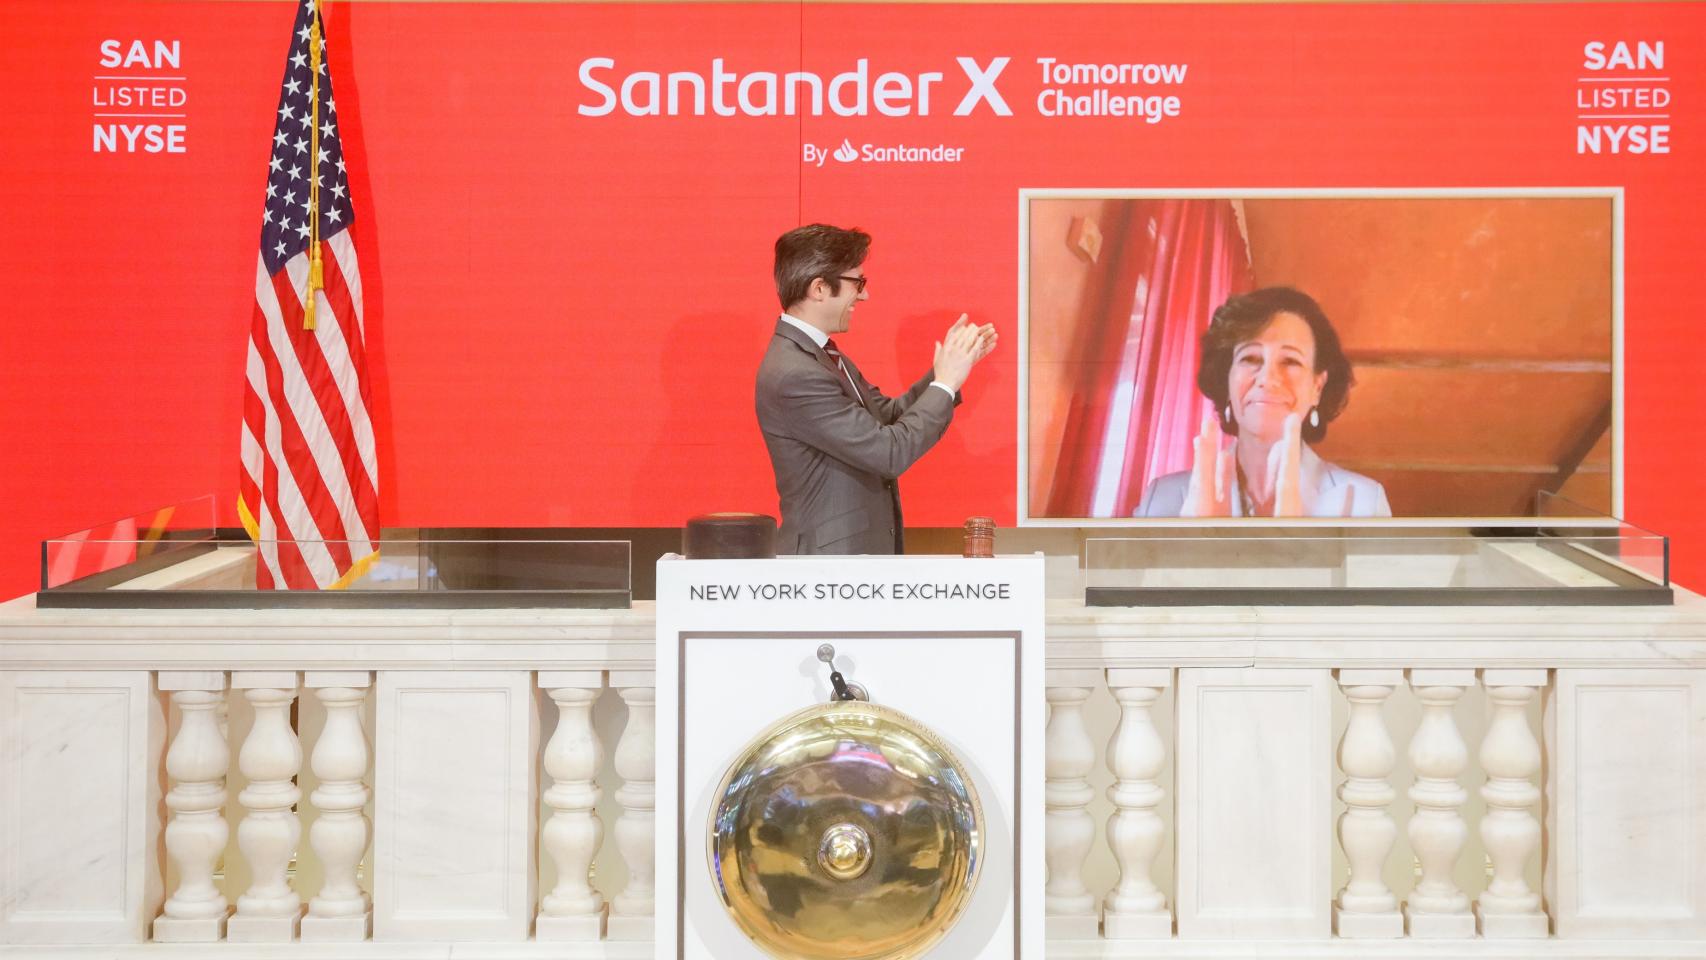 Ana Botín, presidenta de Banco Santander, realiza la campana virtual en la Bolsa de Nueva York, en agosto de 2020.